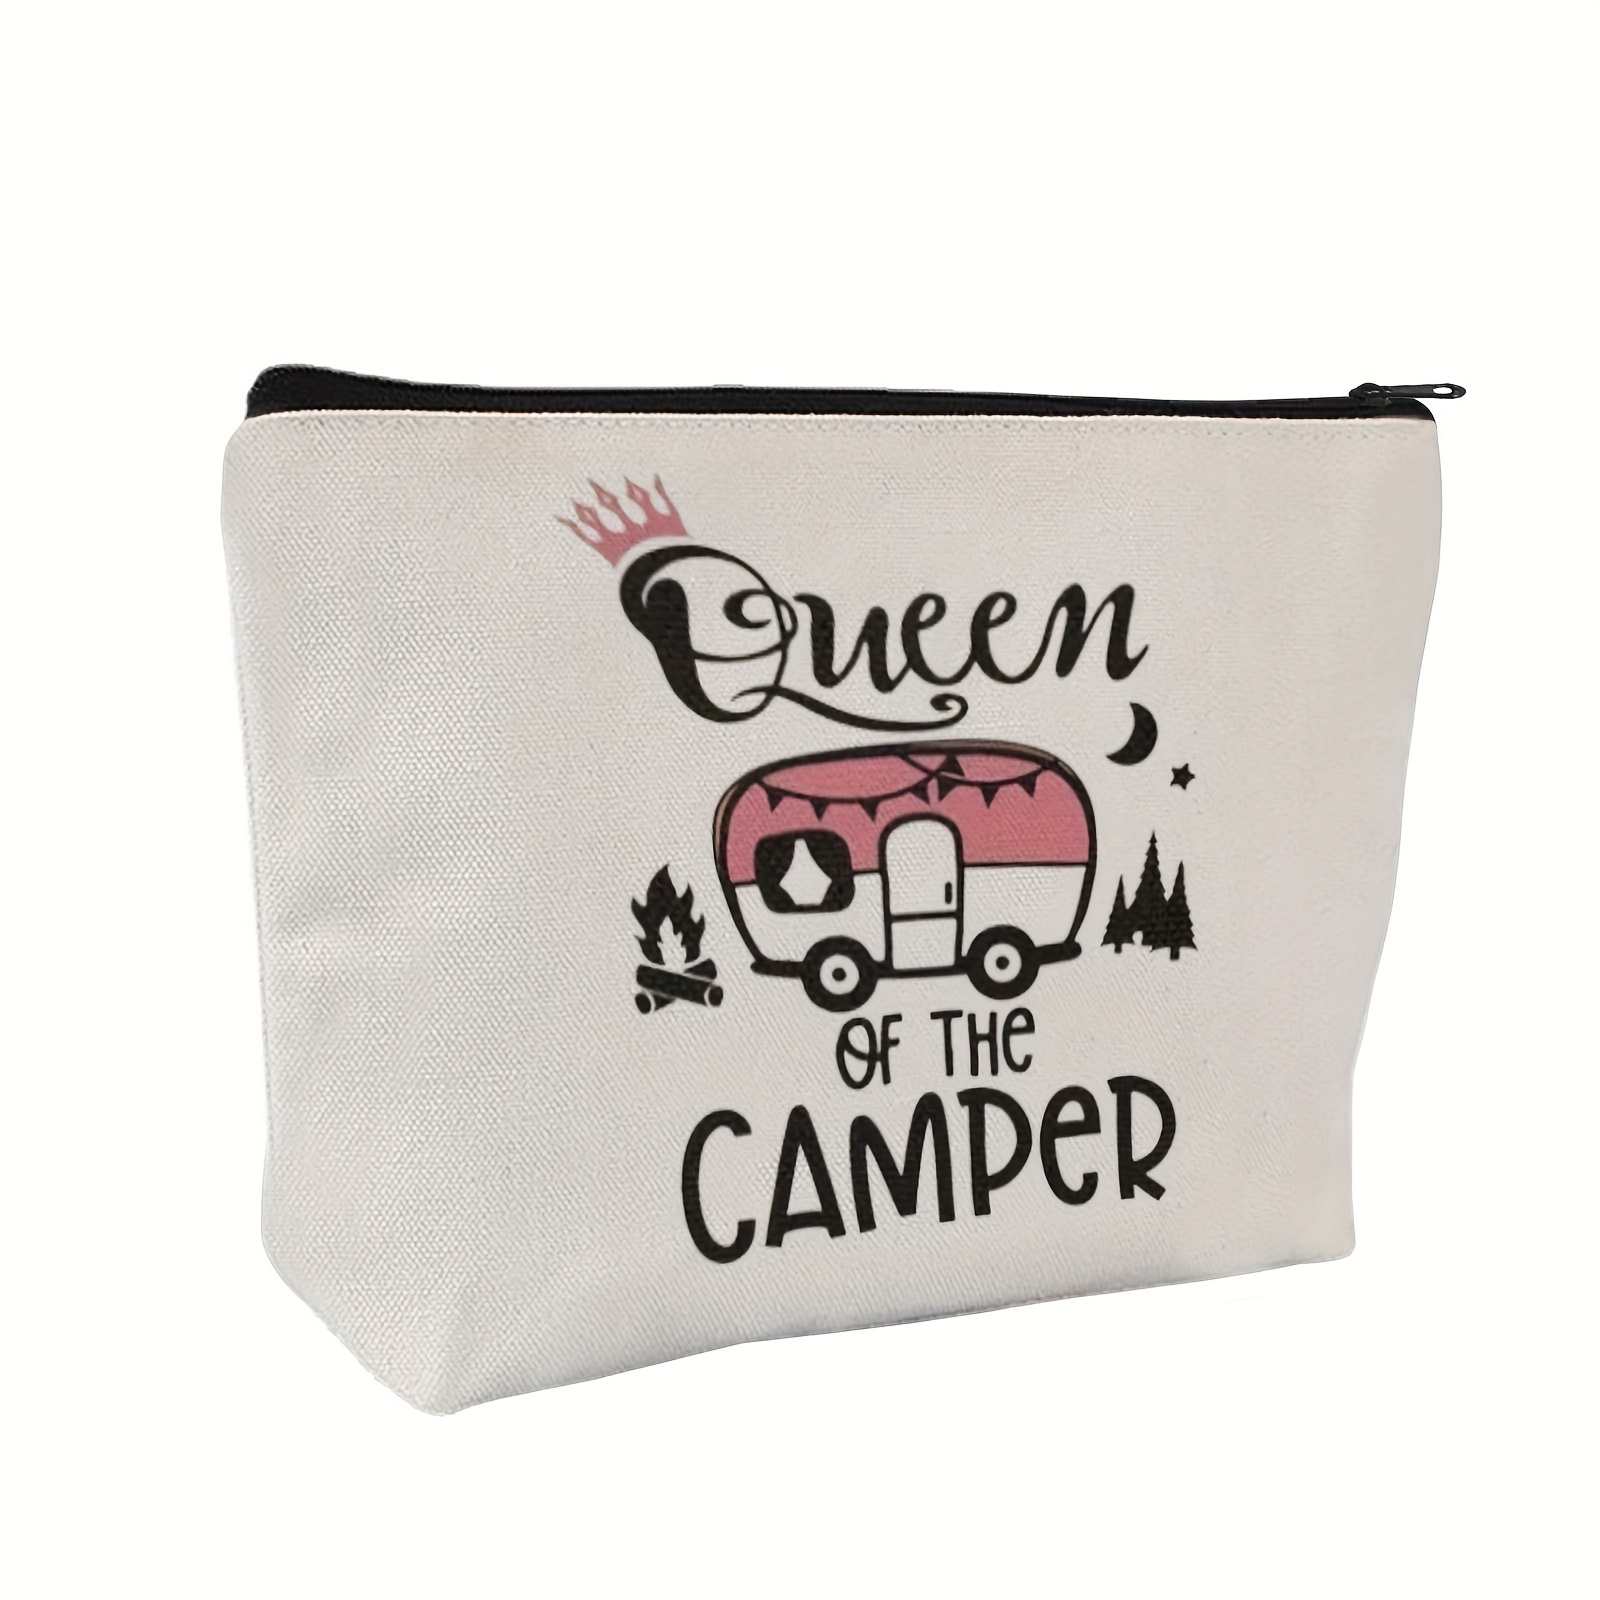 

Camper Accessories Travel Trailer - Happy Camper - Camping Makeup Bag Gift Camper Camp Vintage Camper Decor - Queen Of The Camper